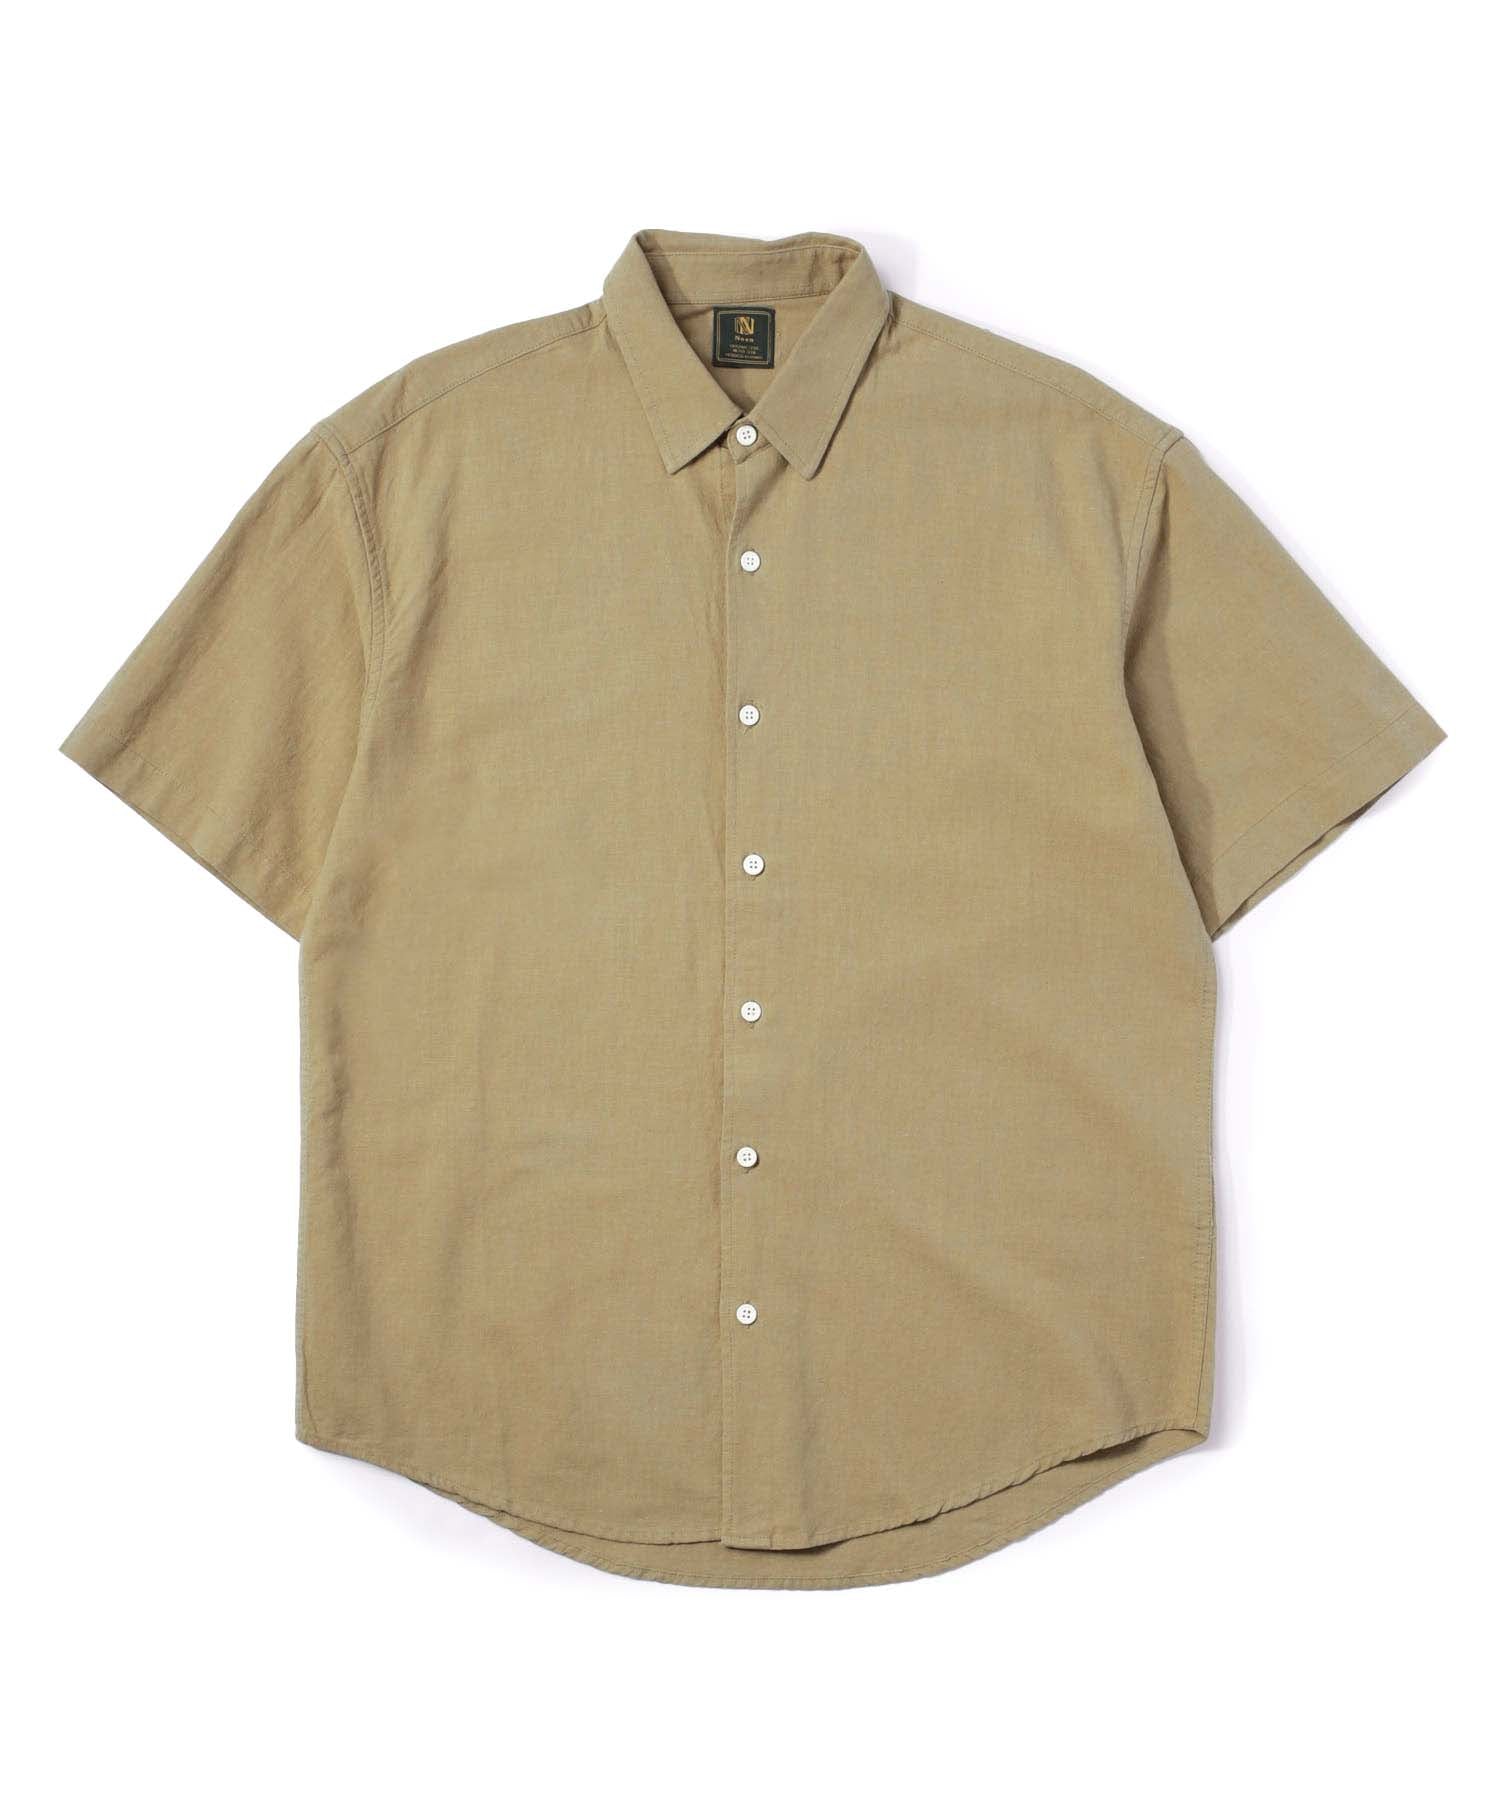 半袖レギュラーカラーシャツ[Beige]【セットアップ上】